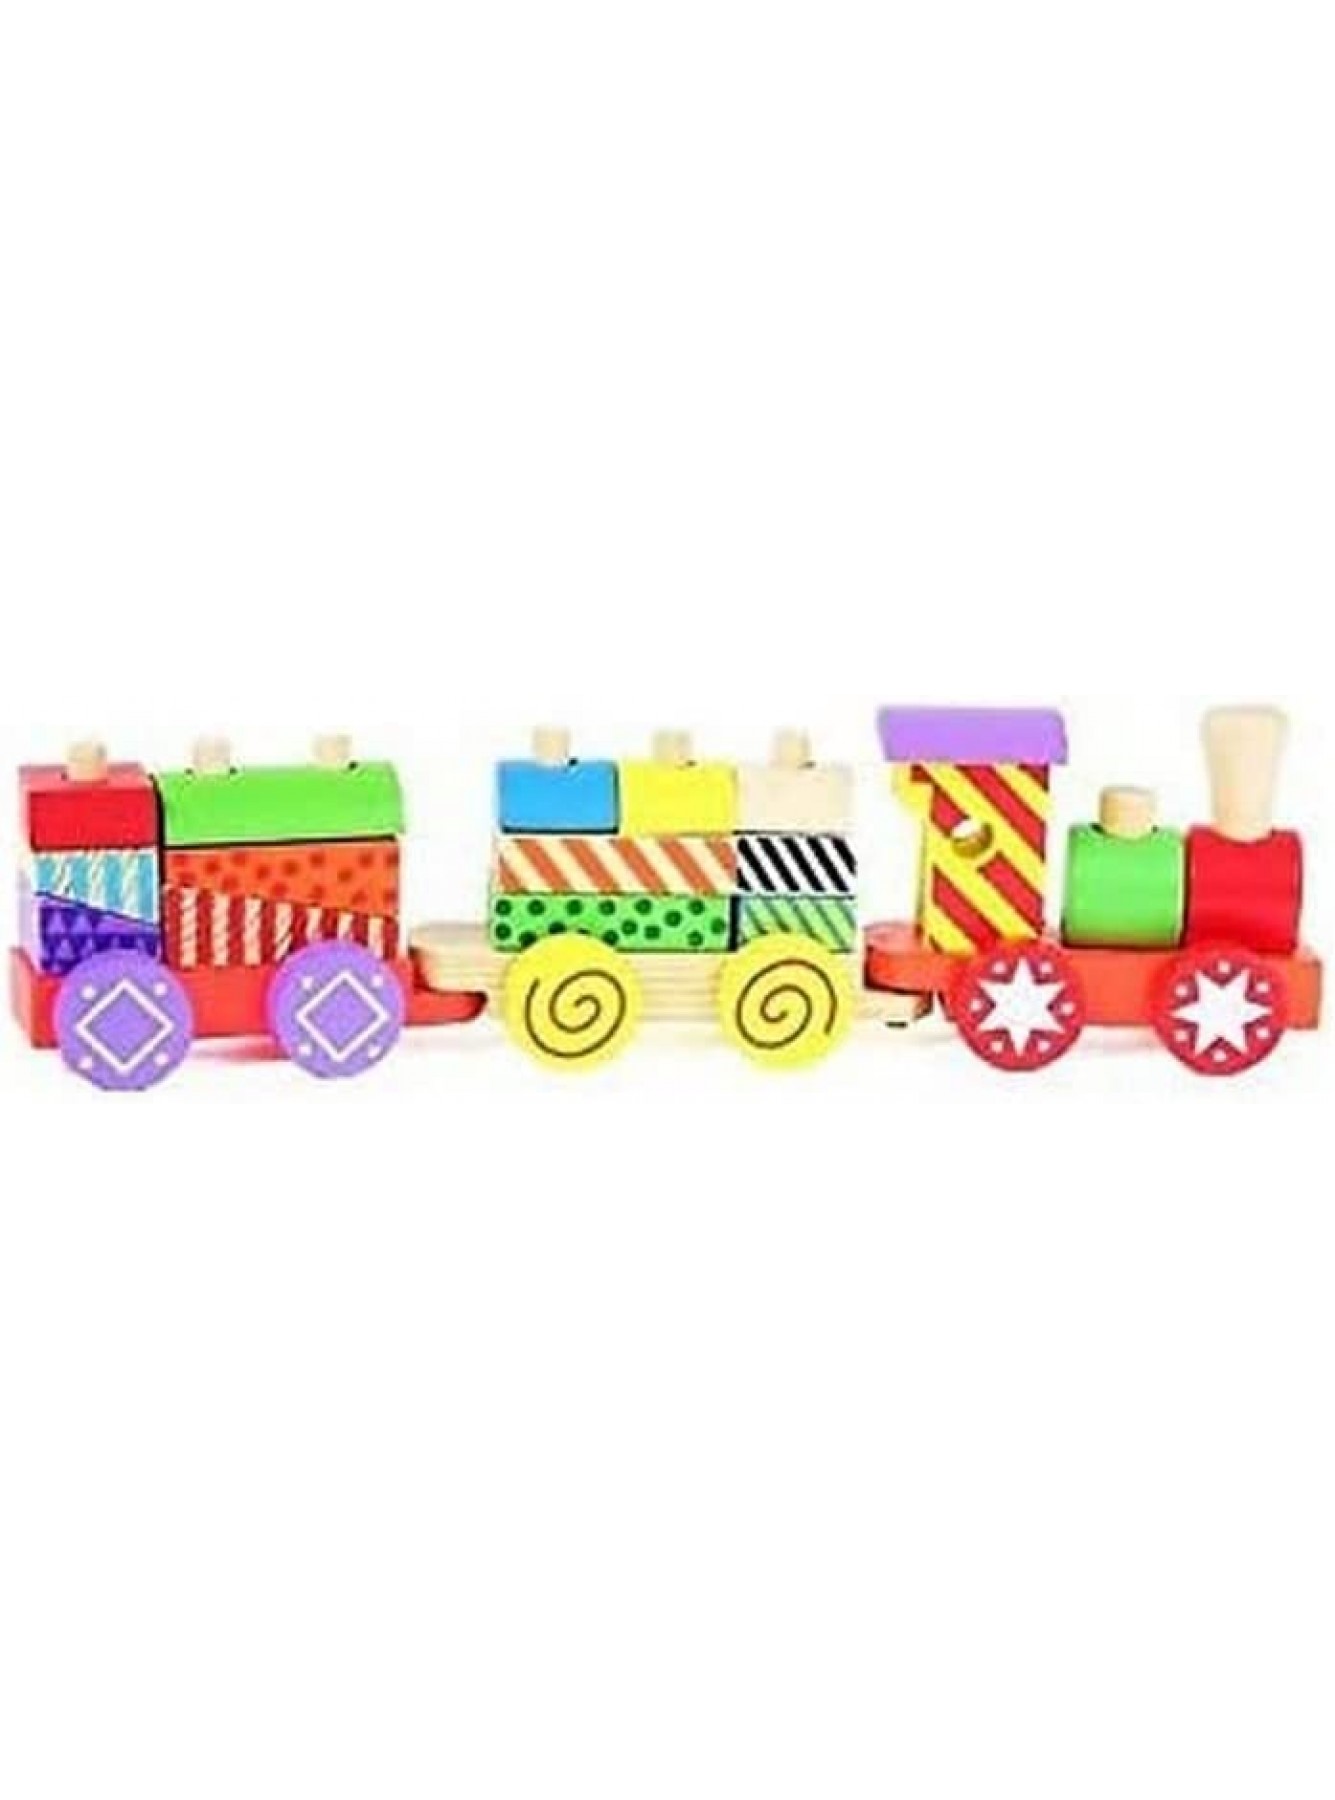 Van Manen 2Play Wood Holzzug mit Wagons Holzspielzeug Holzeisenbahn mit bunten Bauklötzen Spielzeug für Kinder 610063 Mehrfarbig - B06Y1J3P5L